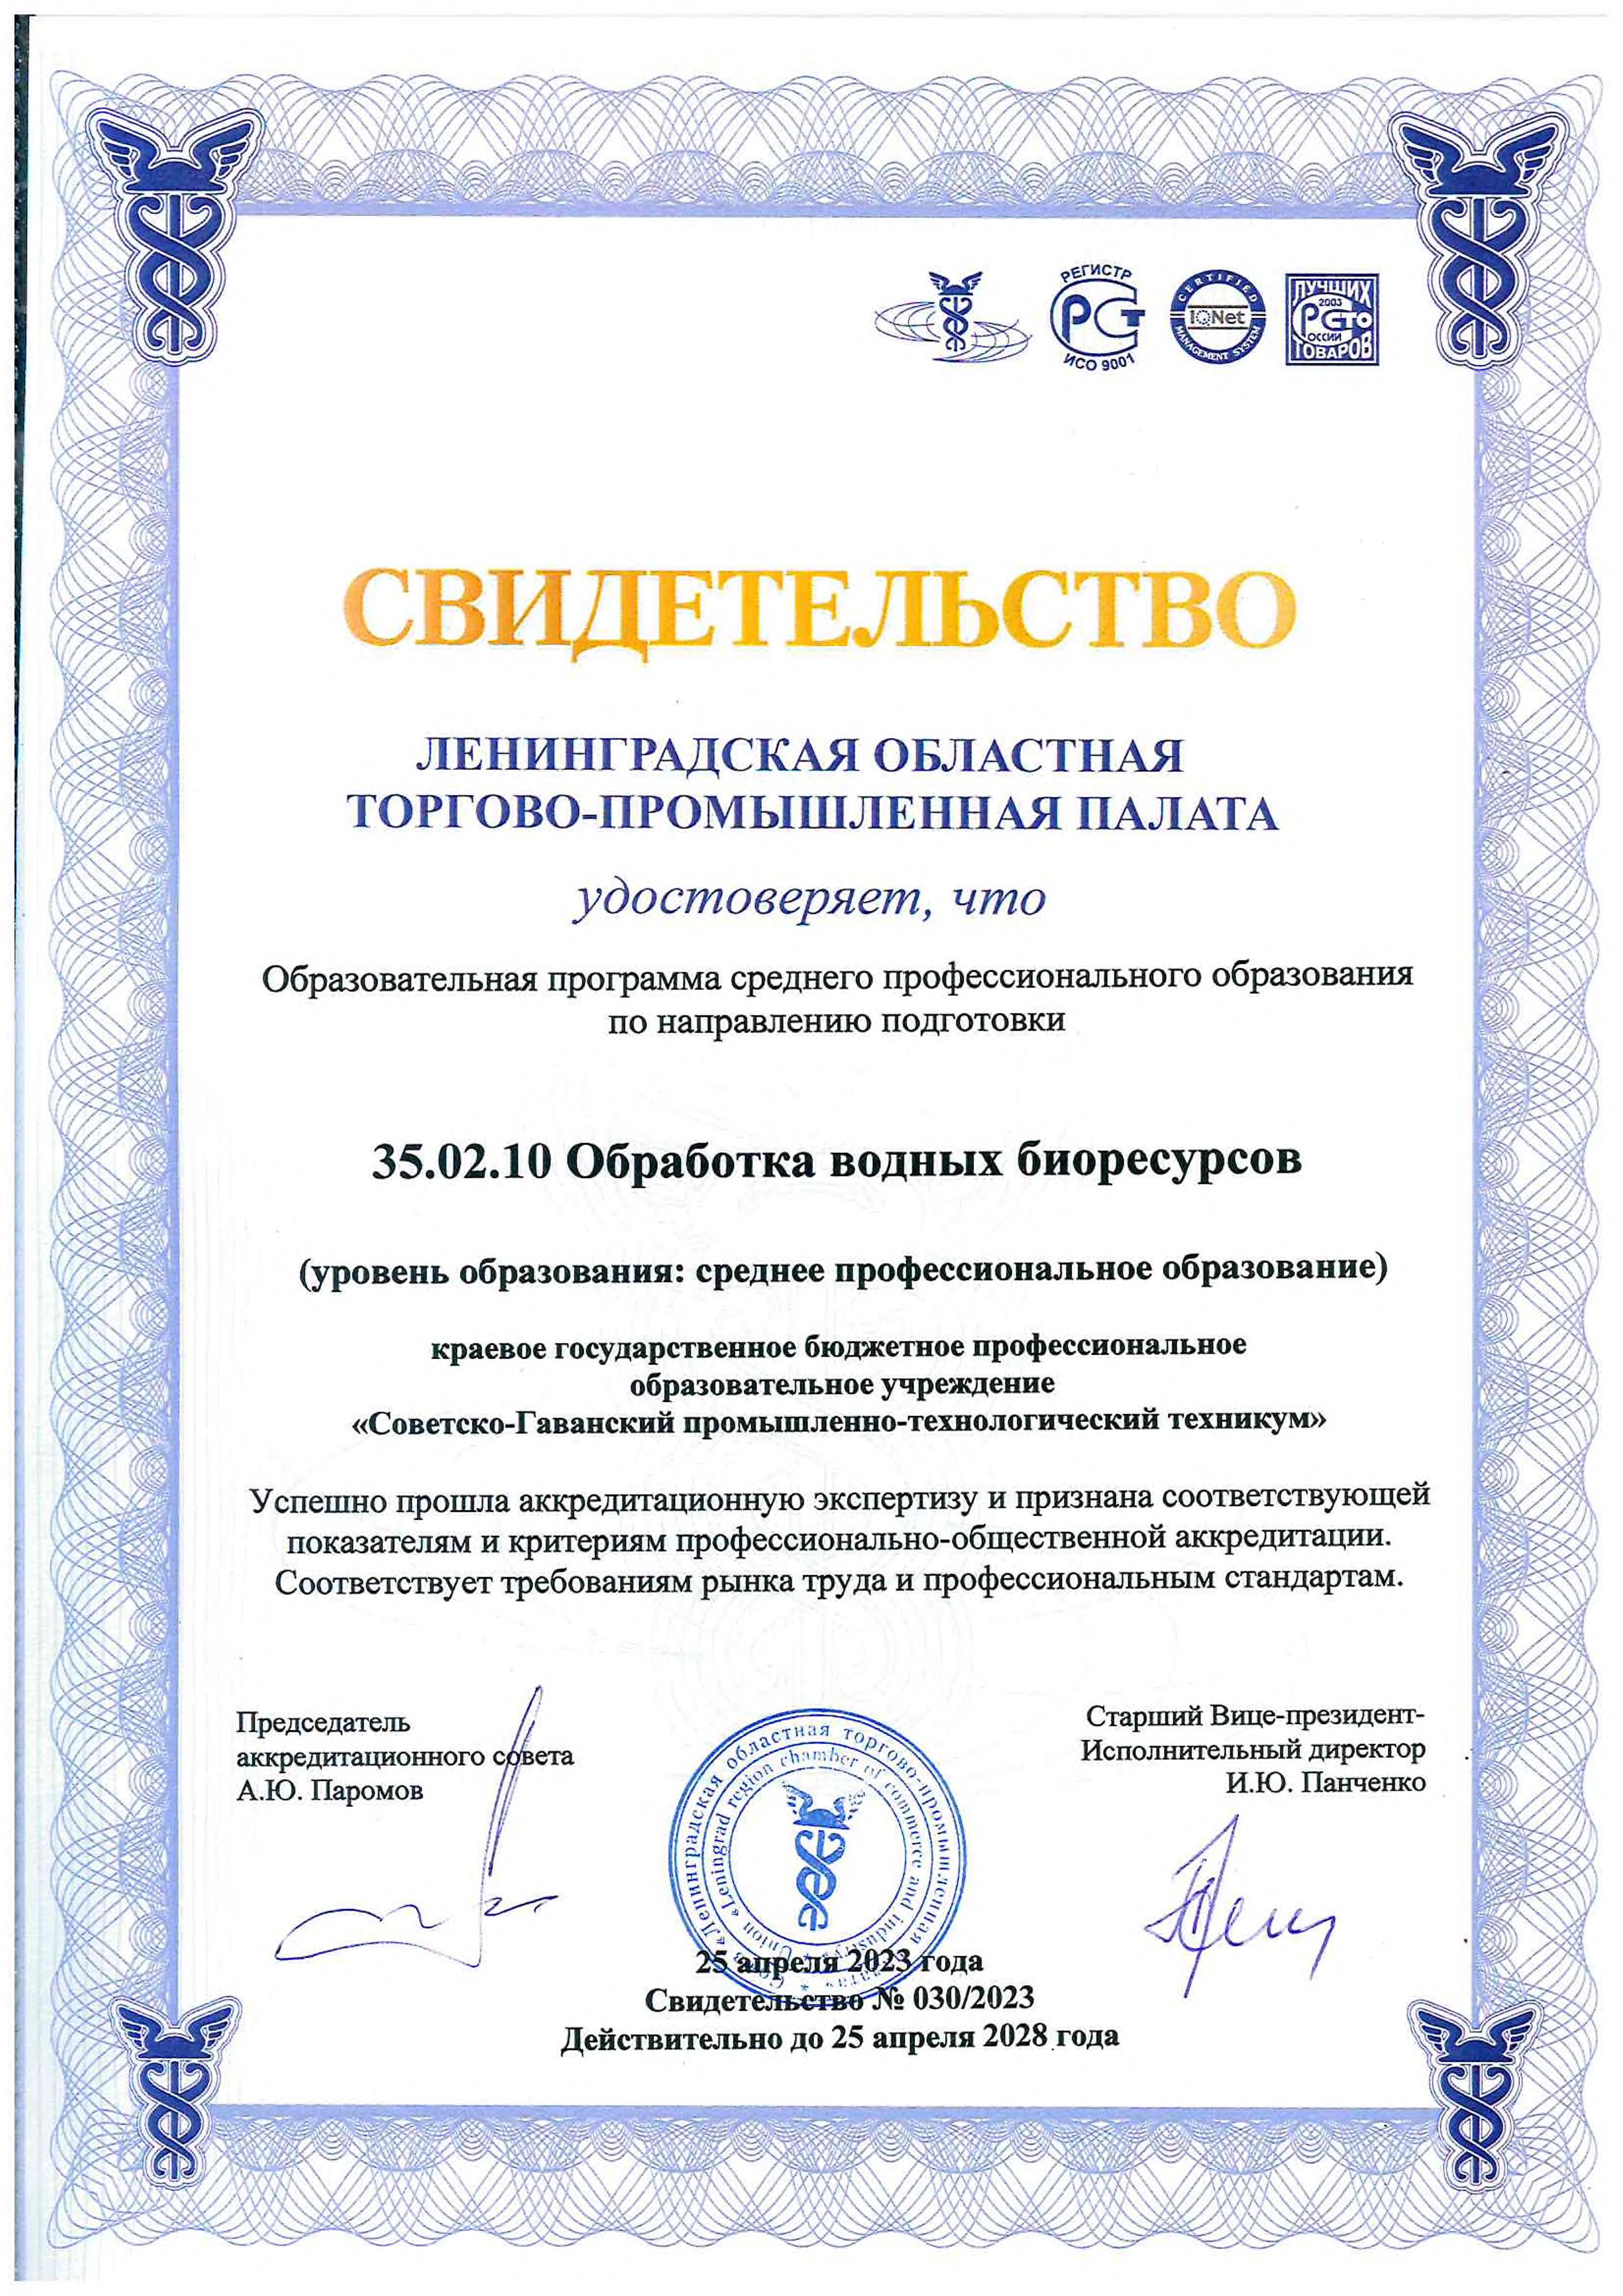 Svidetelstvo ob akkreditacii 35.02.10 Obrabotka vodnyh bioresursov